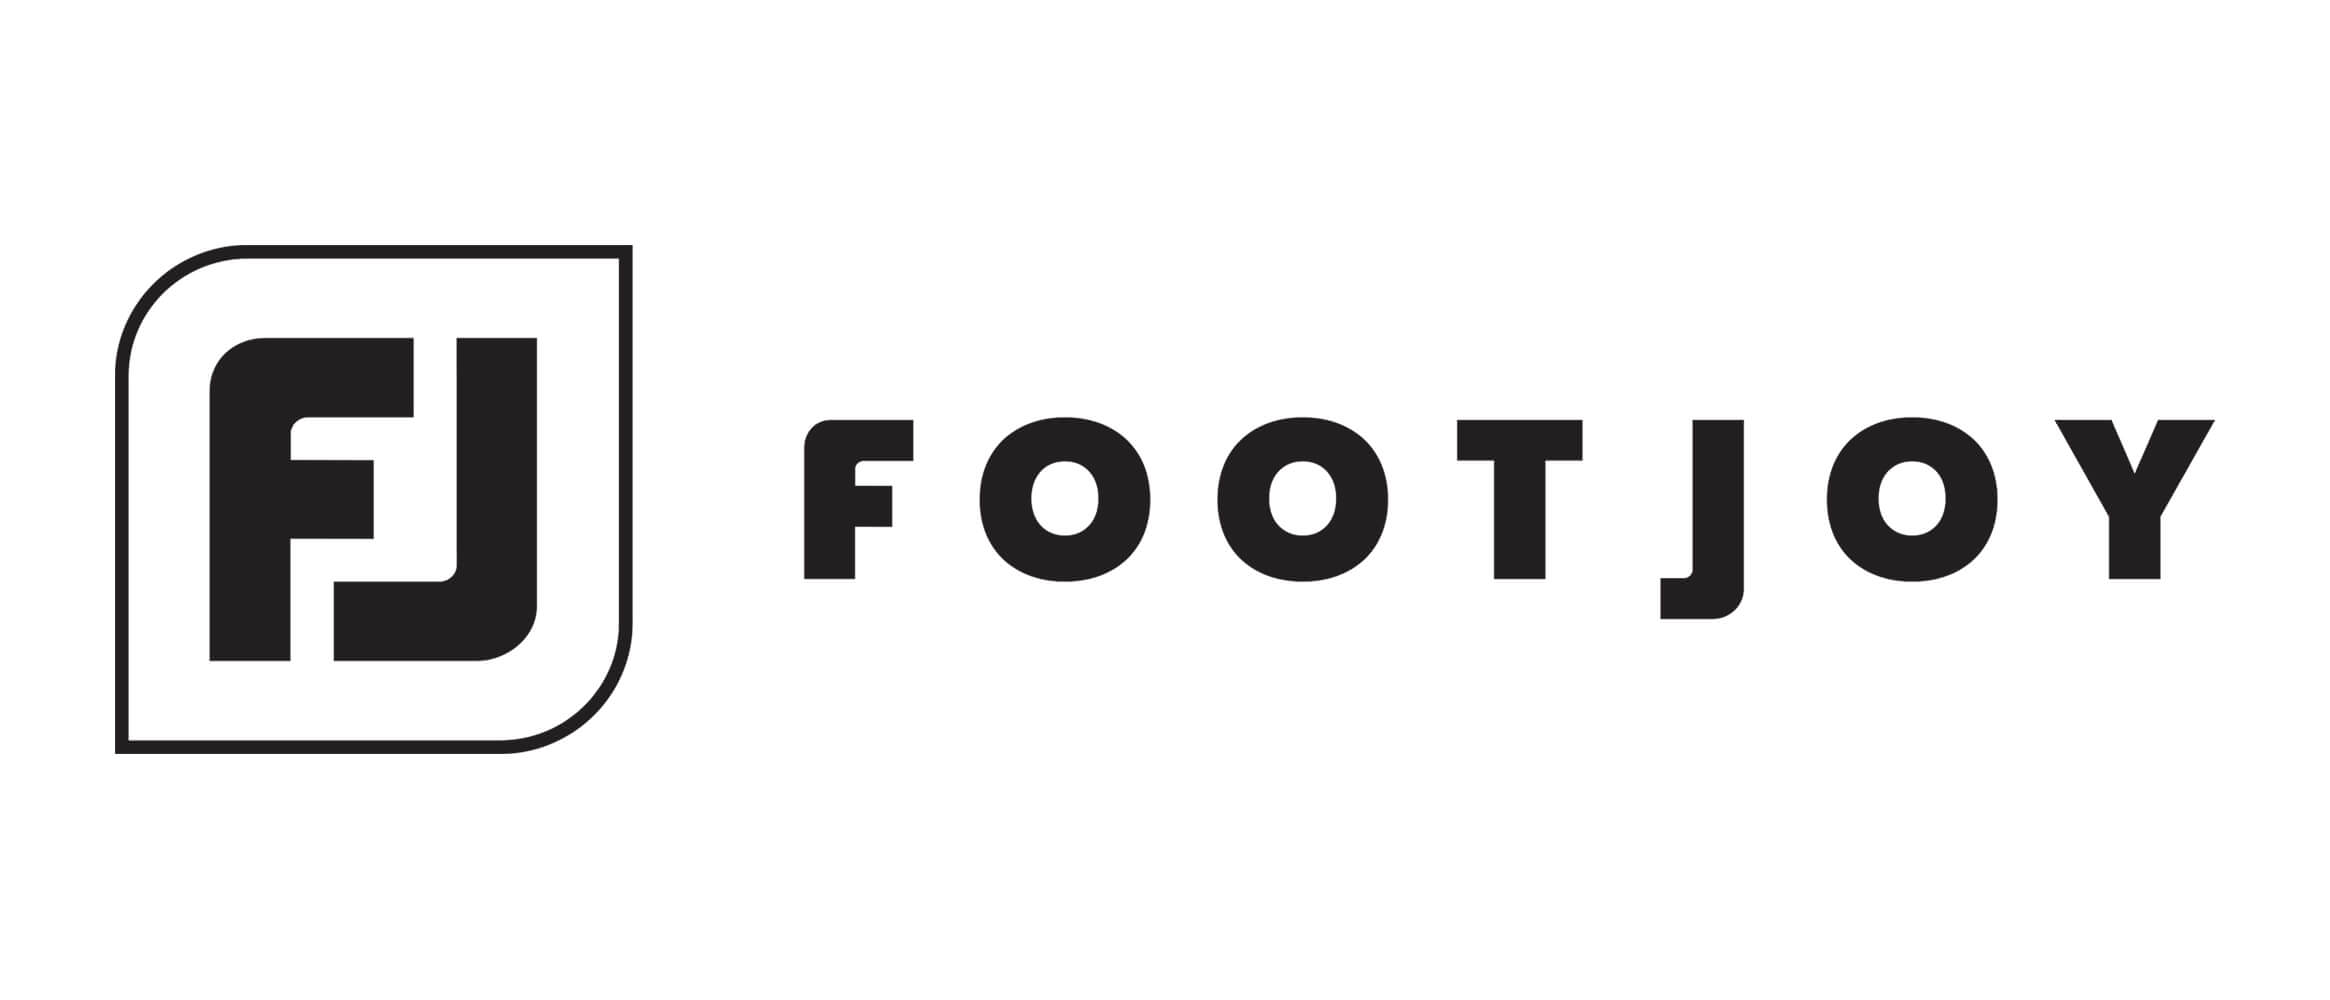 Footjoy FI